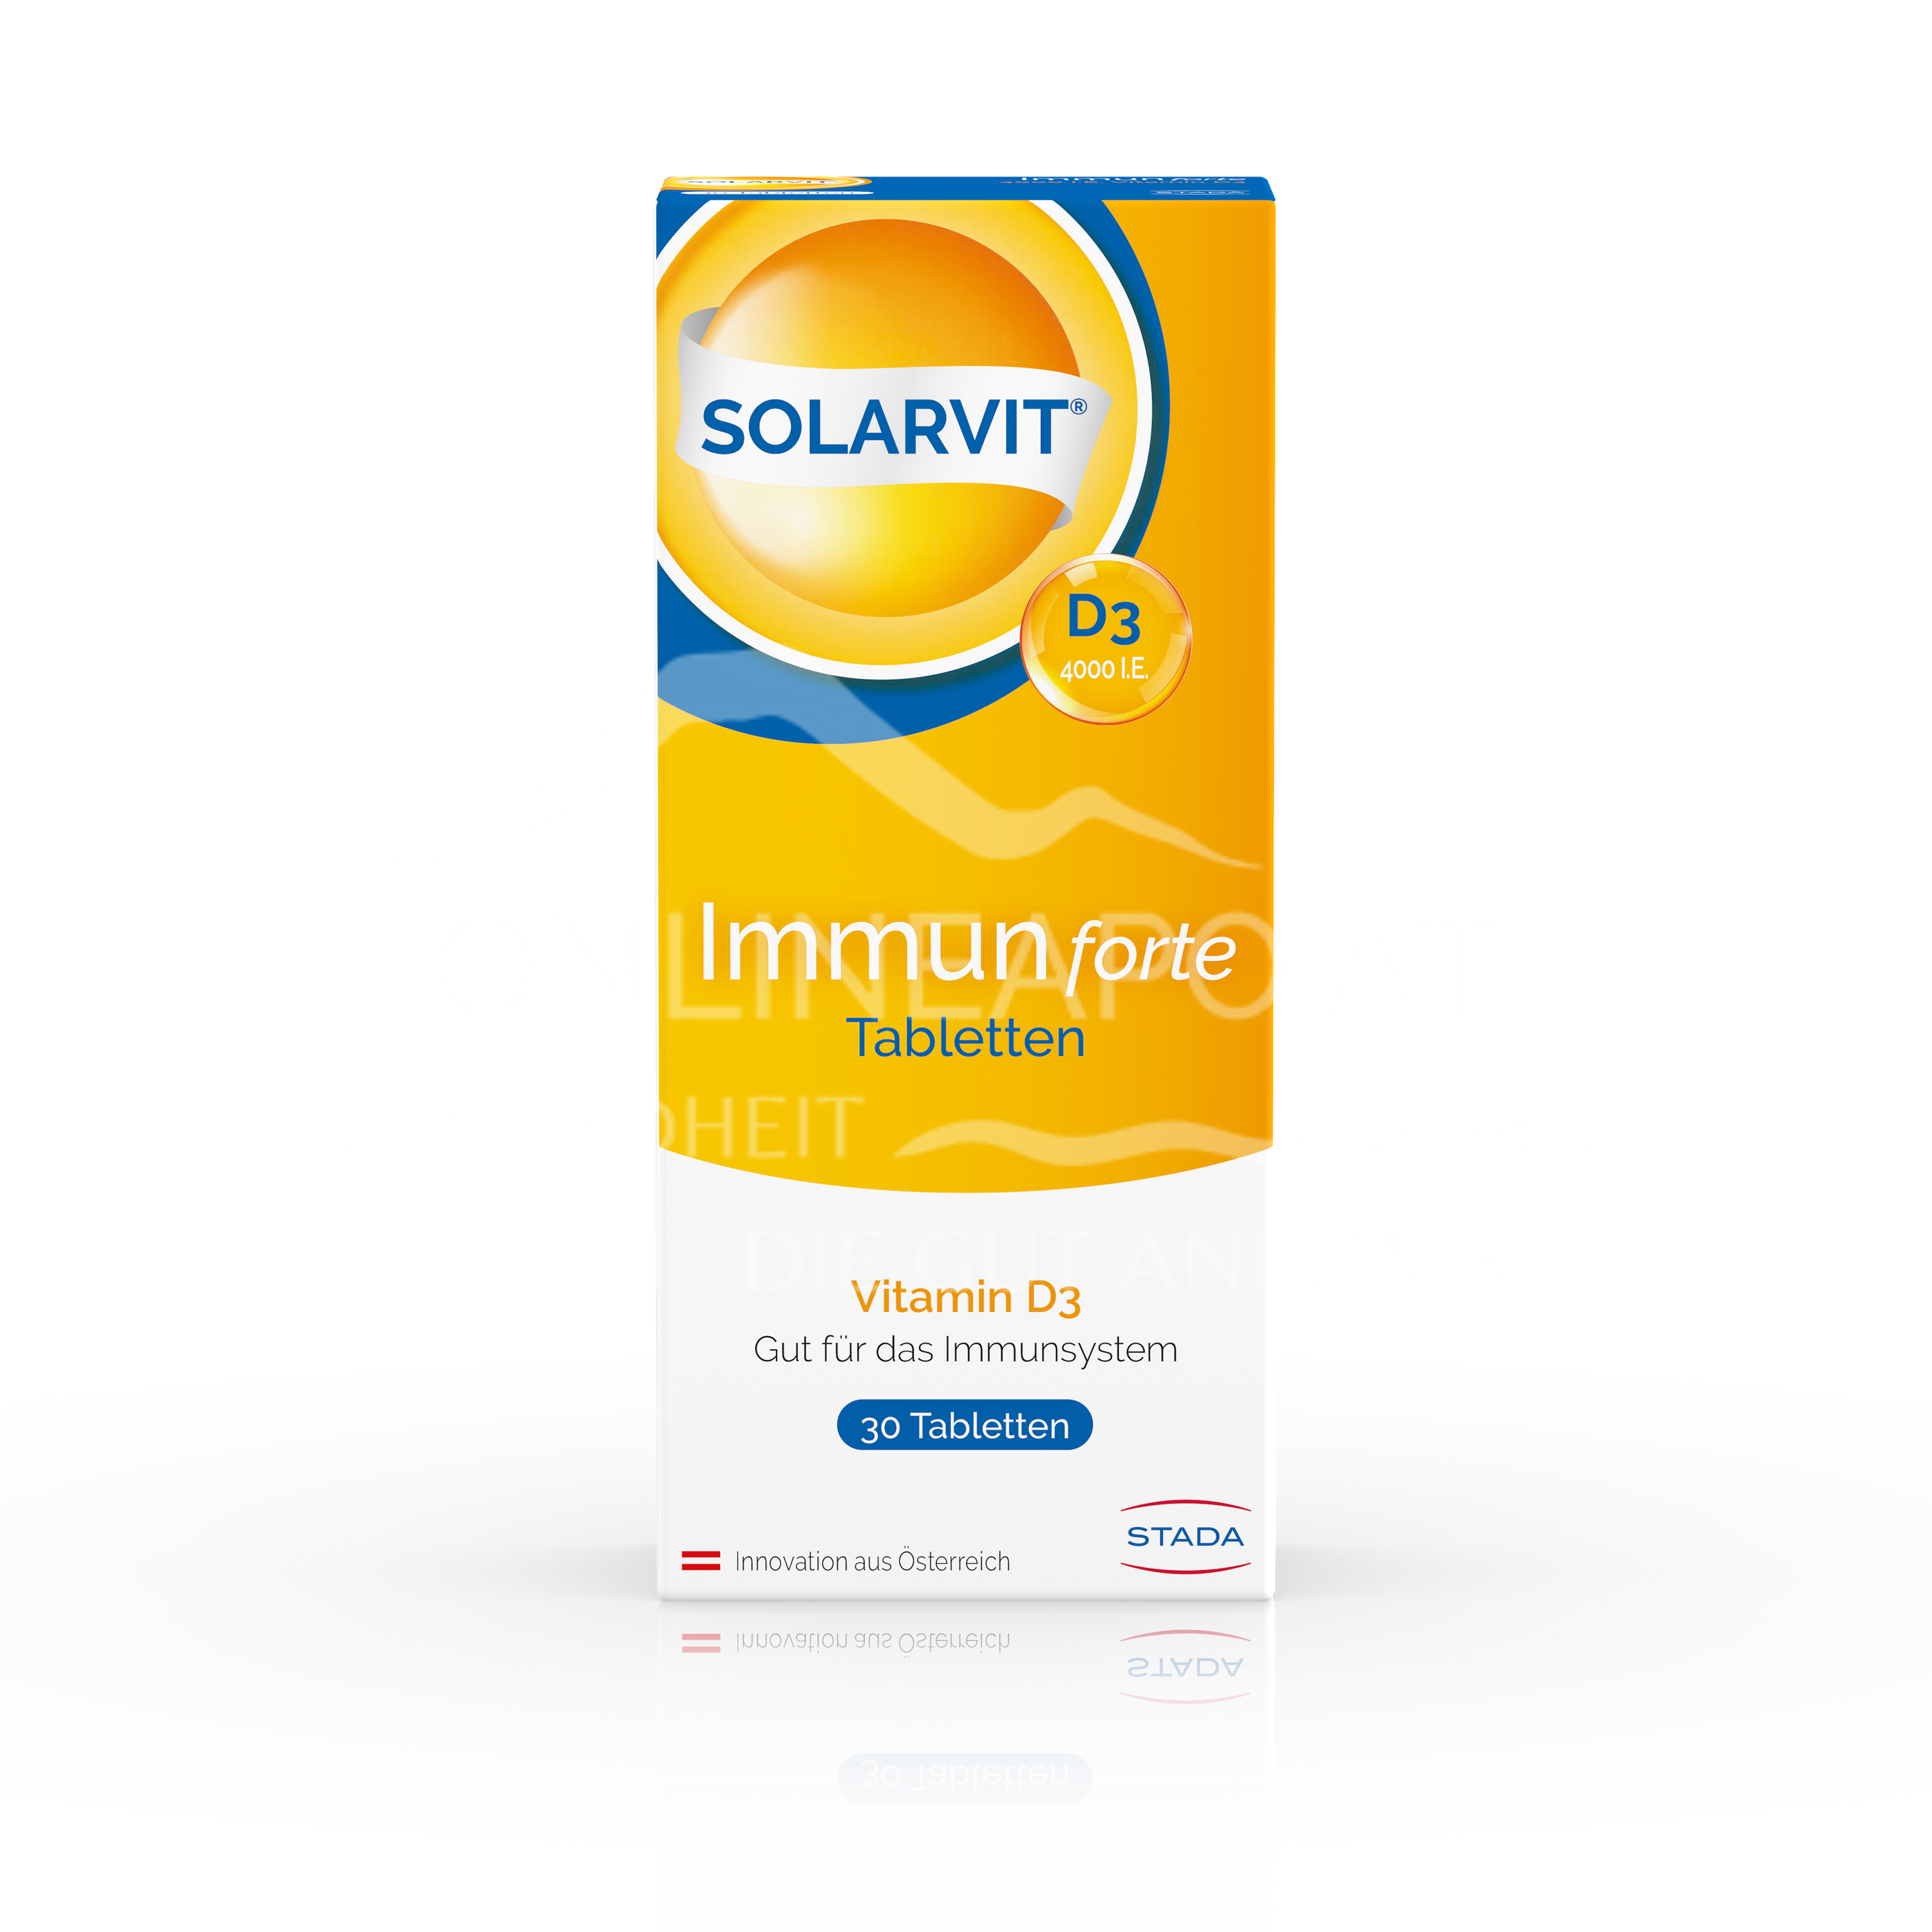 SOLARVIT® Immun forte Tabletten